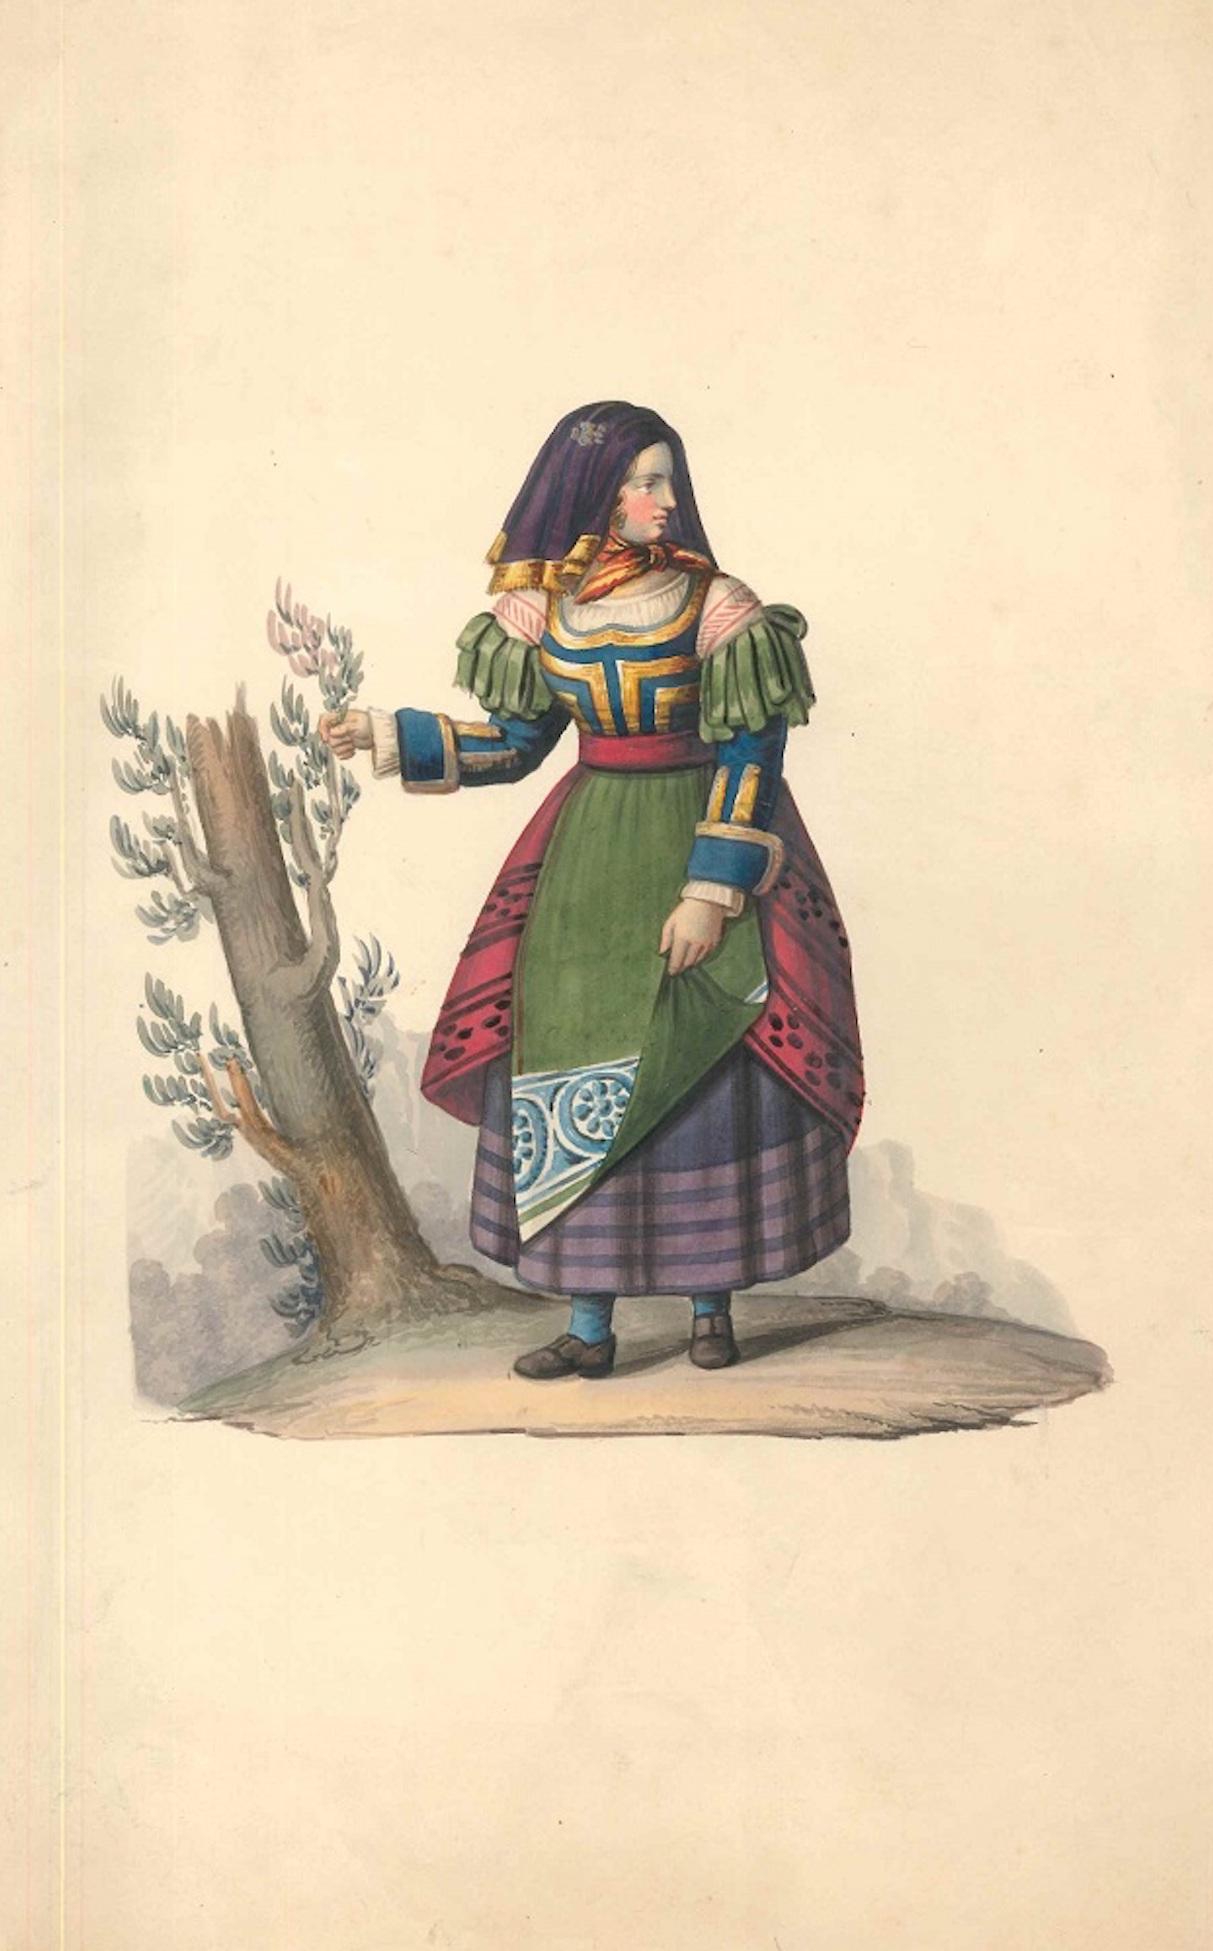 Female figure of XIX century - Watercolor by M. De Vito - 1820 ca.